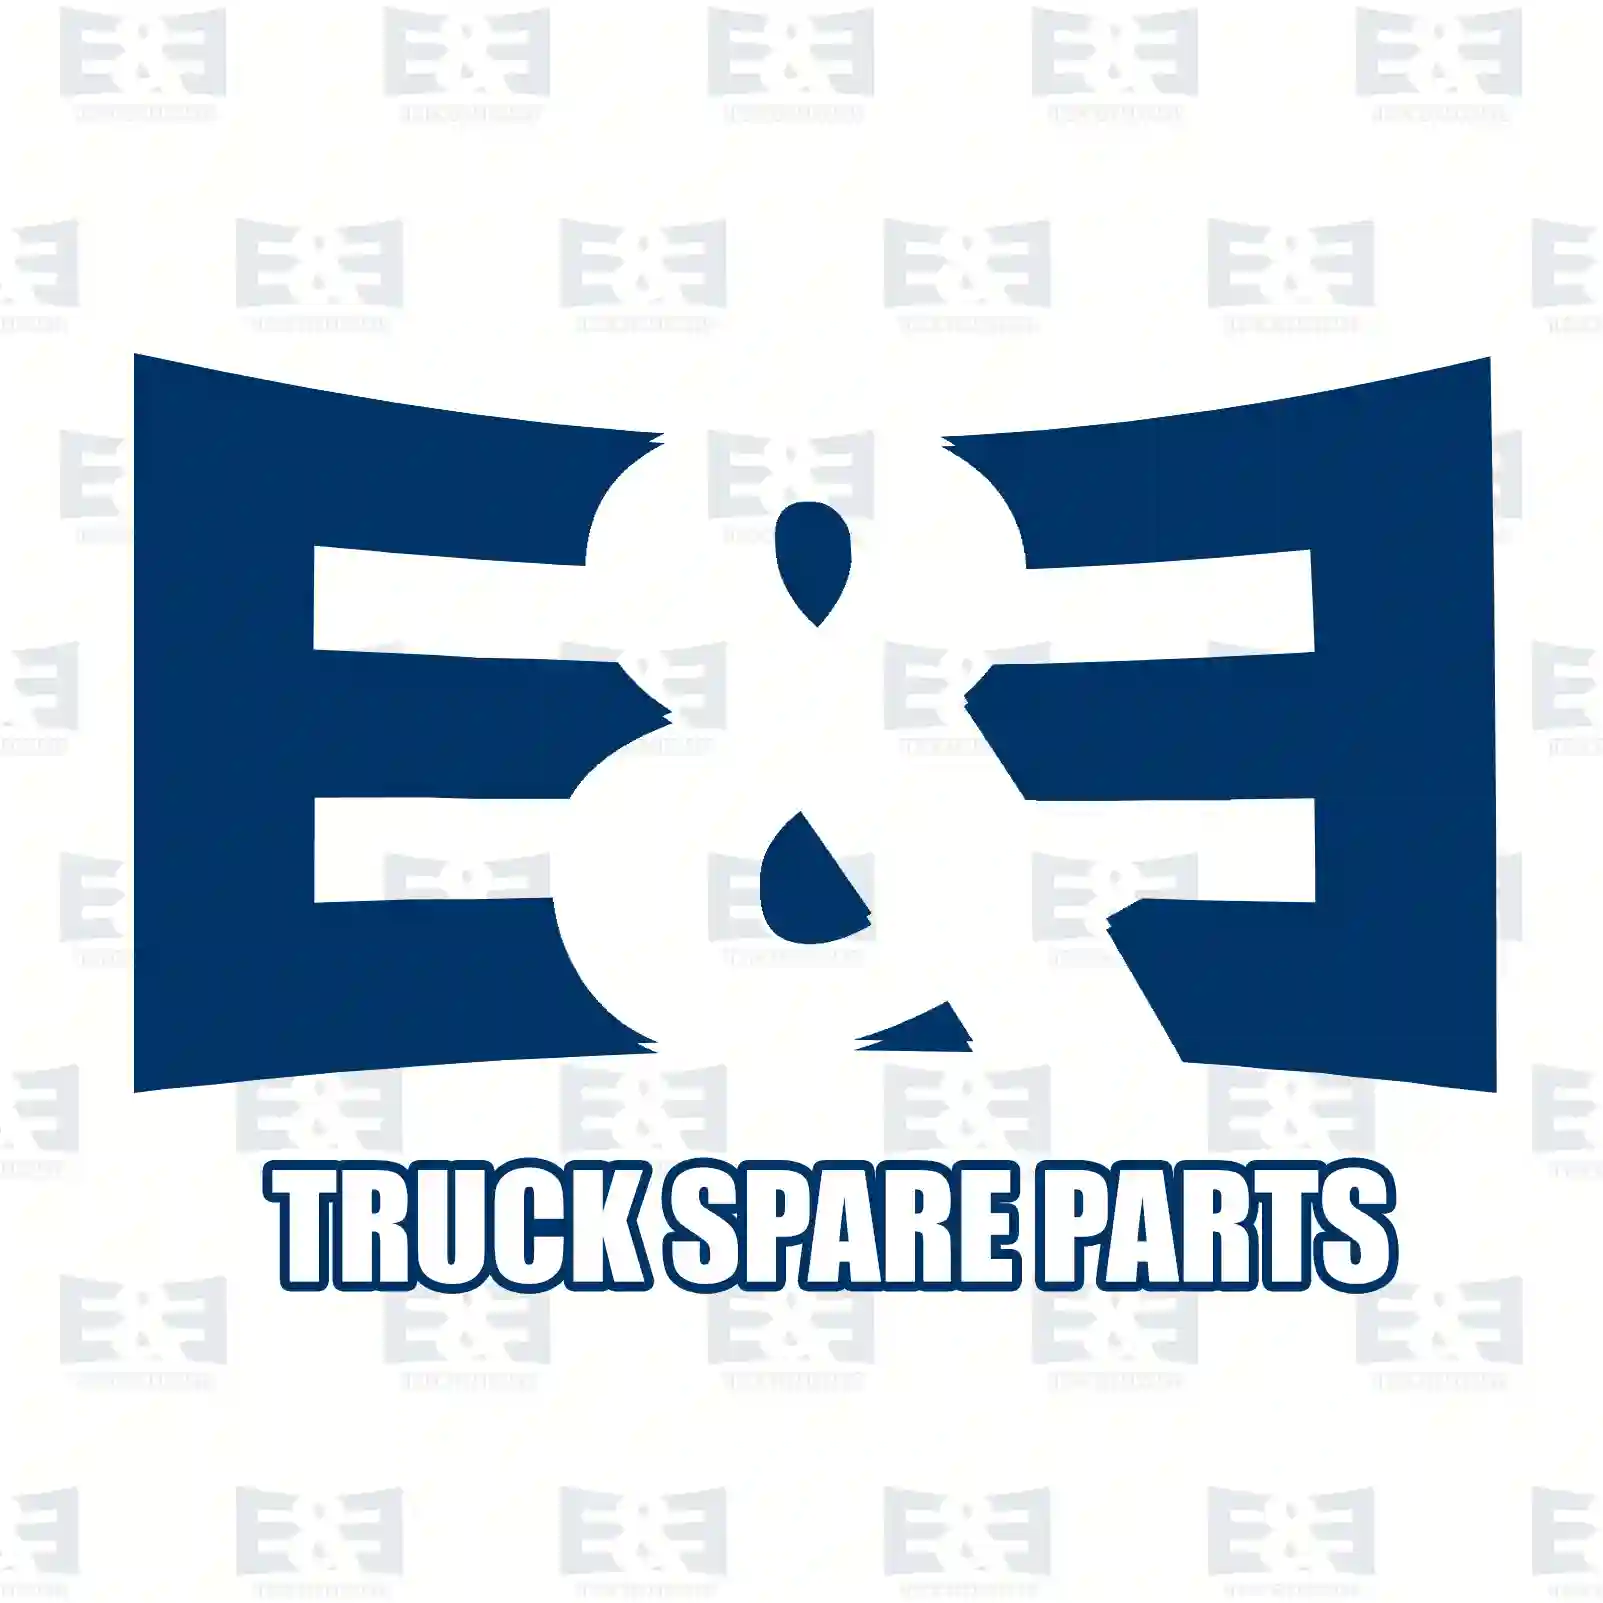 Service kit, 2E2206822, 20430751S3, 20788794S3, 20869725S3, 20879812S3, 20976003S3, 21380488S3, 21707132S3, 21707133S3, 471392S3, 477556S3, 478736S3 ||  2E2206822 E&E Truck Spare Parts | Truck Spare Parts, Auotomotive Spare Parts Service kit, 2E2206822, 20430751S3, 20788794S3, 20869725S3, 20879812S3, 20976003S3, 21380488S3, 21707132S3, 21707133S3, 471392S3, 477556S3, 478736S3 ||  2E2206822 E&E Truck Spare Parts | Truck Spare Parts, Auotomotive Spare Parts